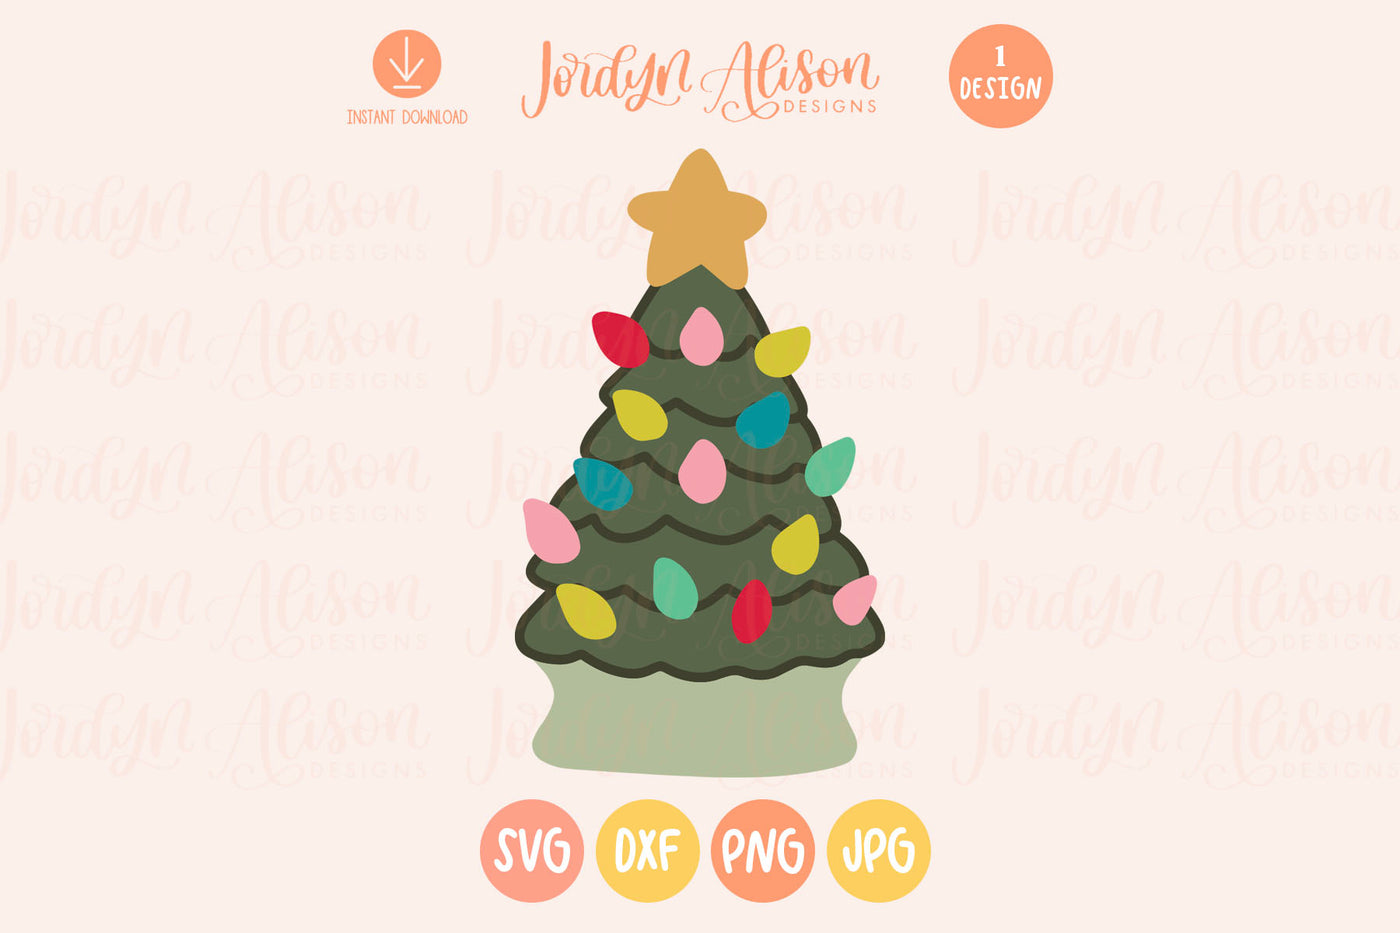 Retro Christmas Tree SVG